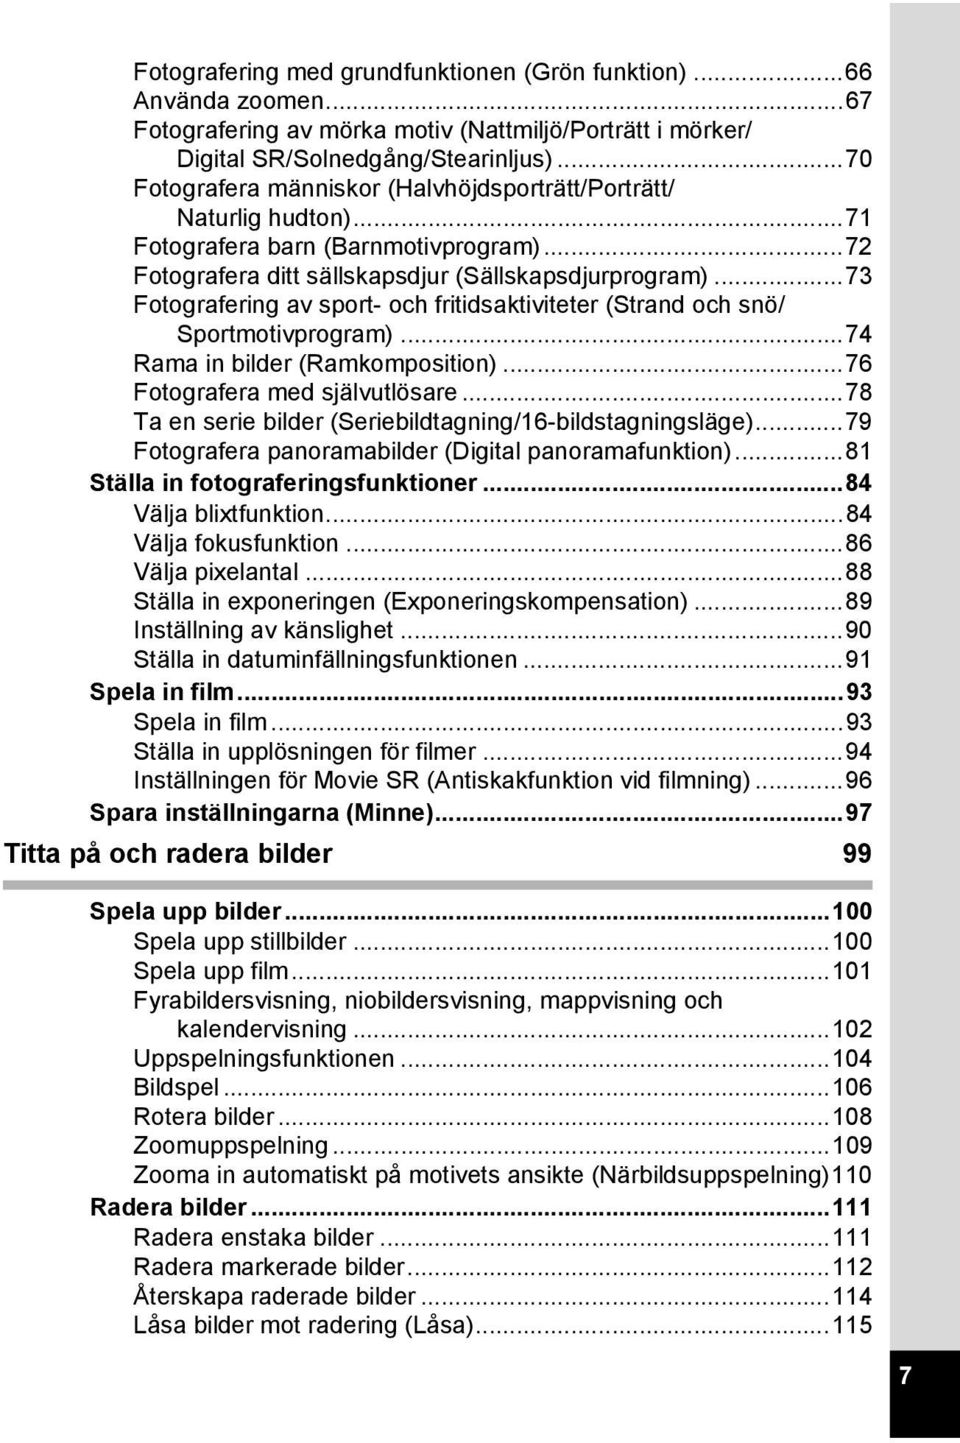 ..73 Fotografering av sport- och fritidsaktiviteter (Strand och snö/ Sportmotivprogram)...74 Rama in bilder (Ramkomposition)...76 Fotografera med självutlösare.